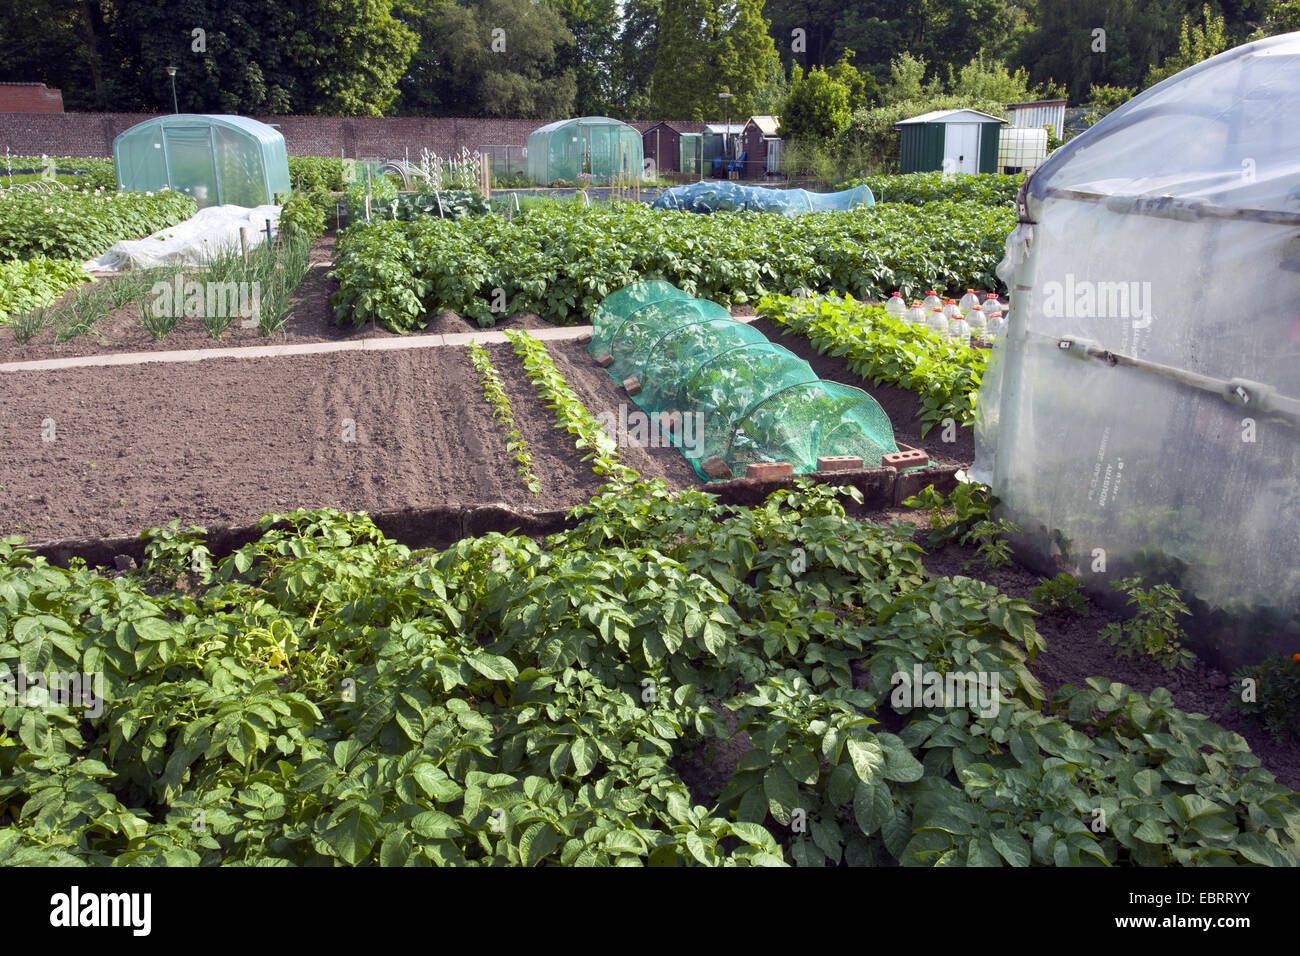 potato (Solanum tuberosum), potatoe and lettuce bed in a garden, Belgium, Oudenaarde Stock Photo